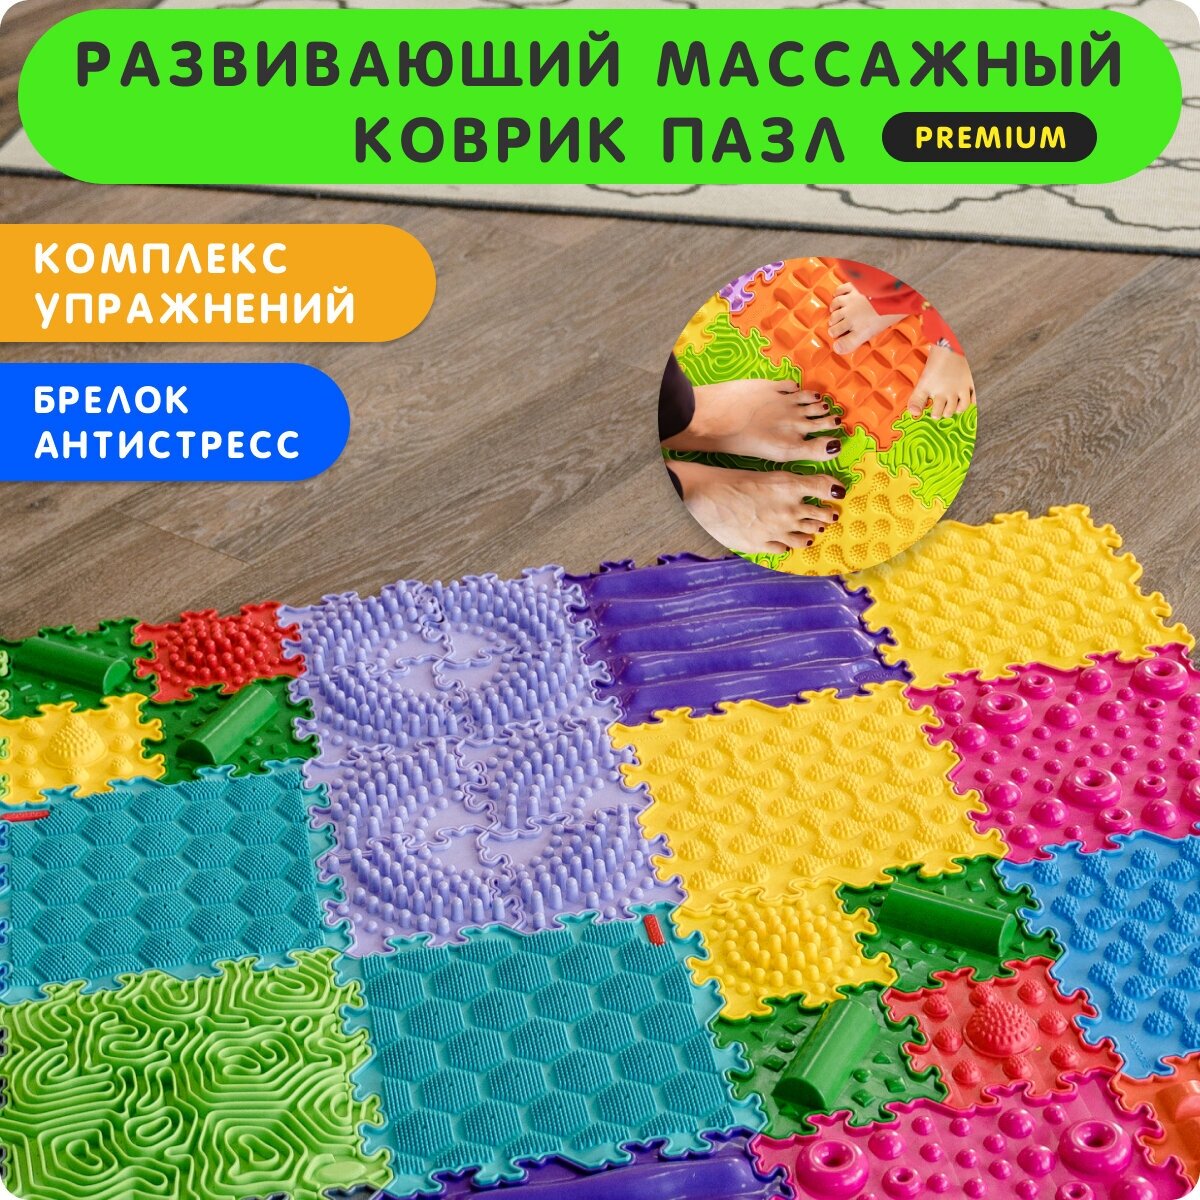 Развивающий игровой массажный коврик пазл для детей напольный, разноцветный, 16 пазлов